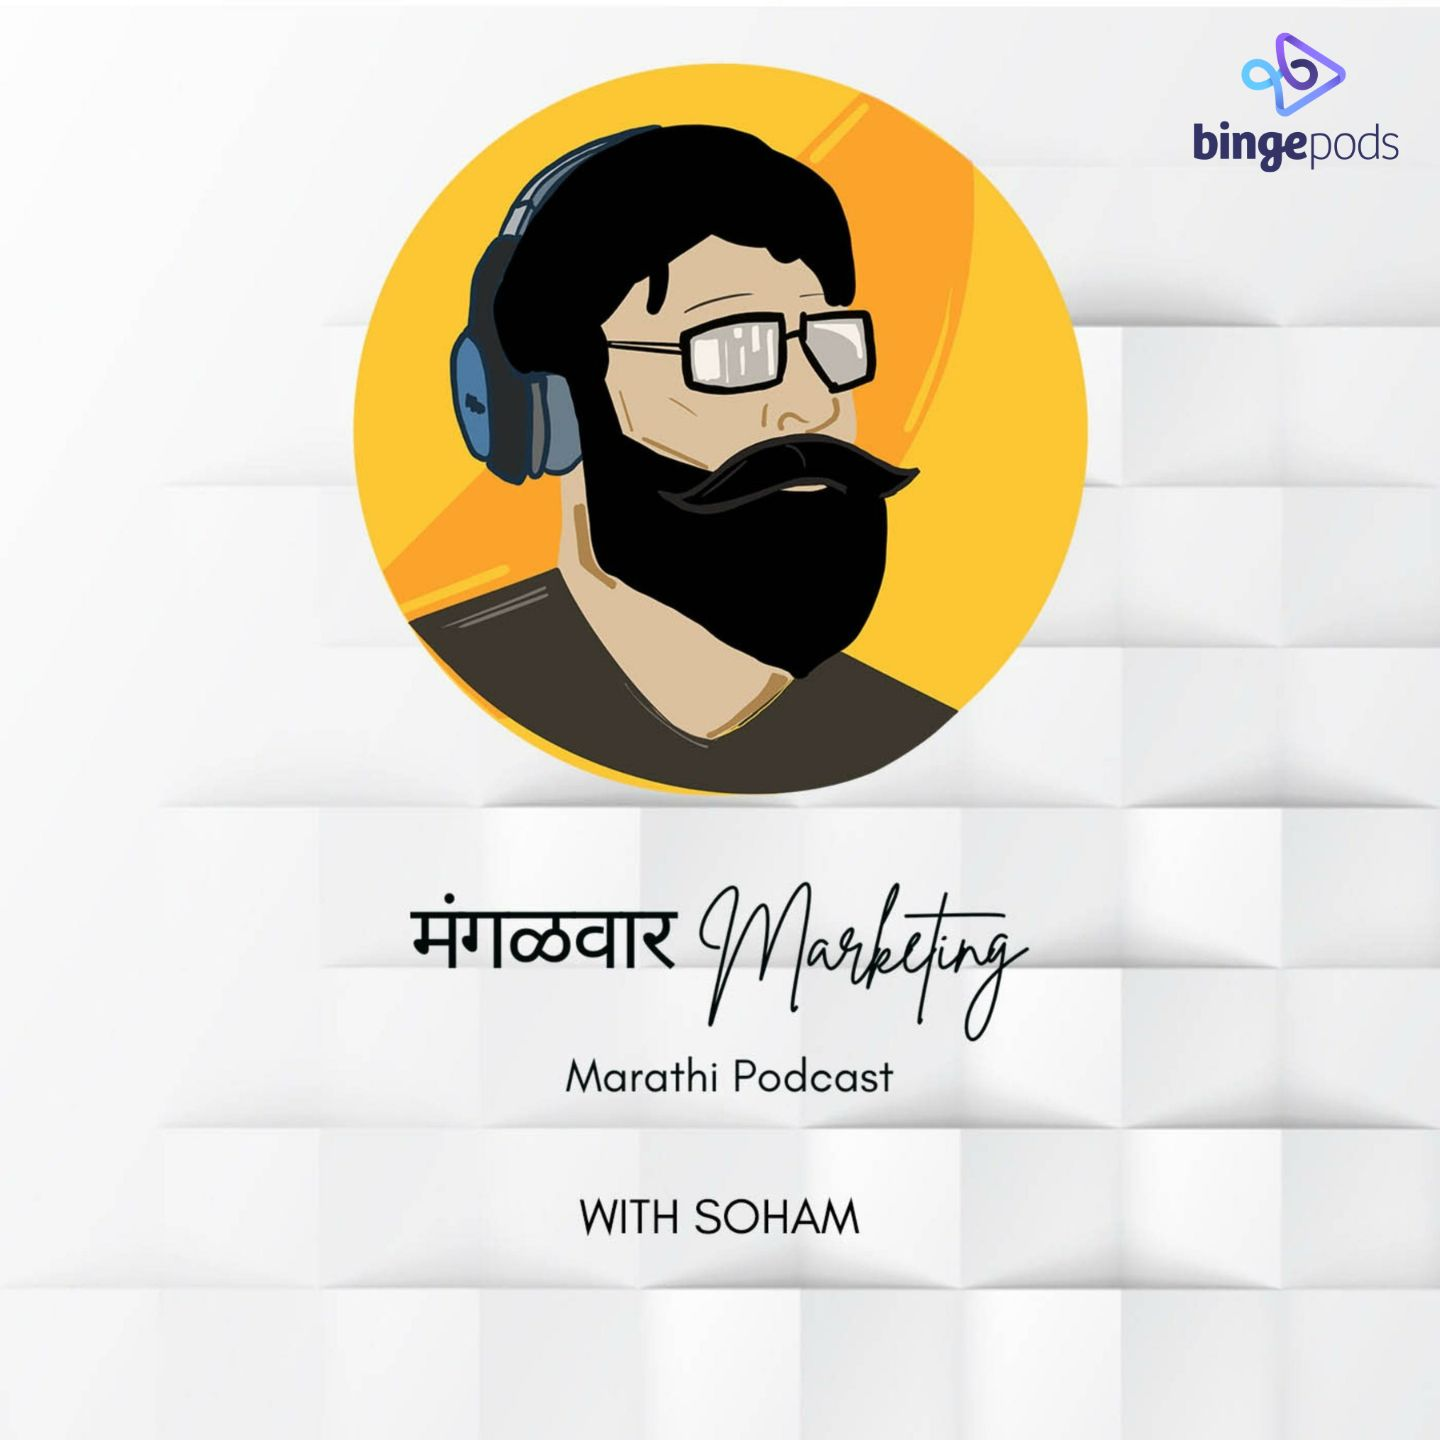 Mangalwar Marketing | Podcast in Marathi